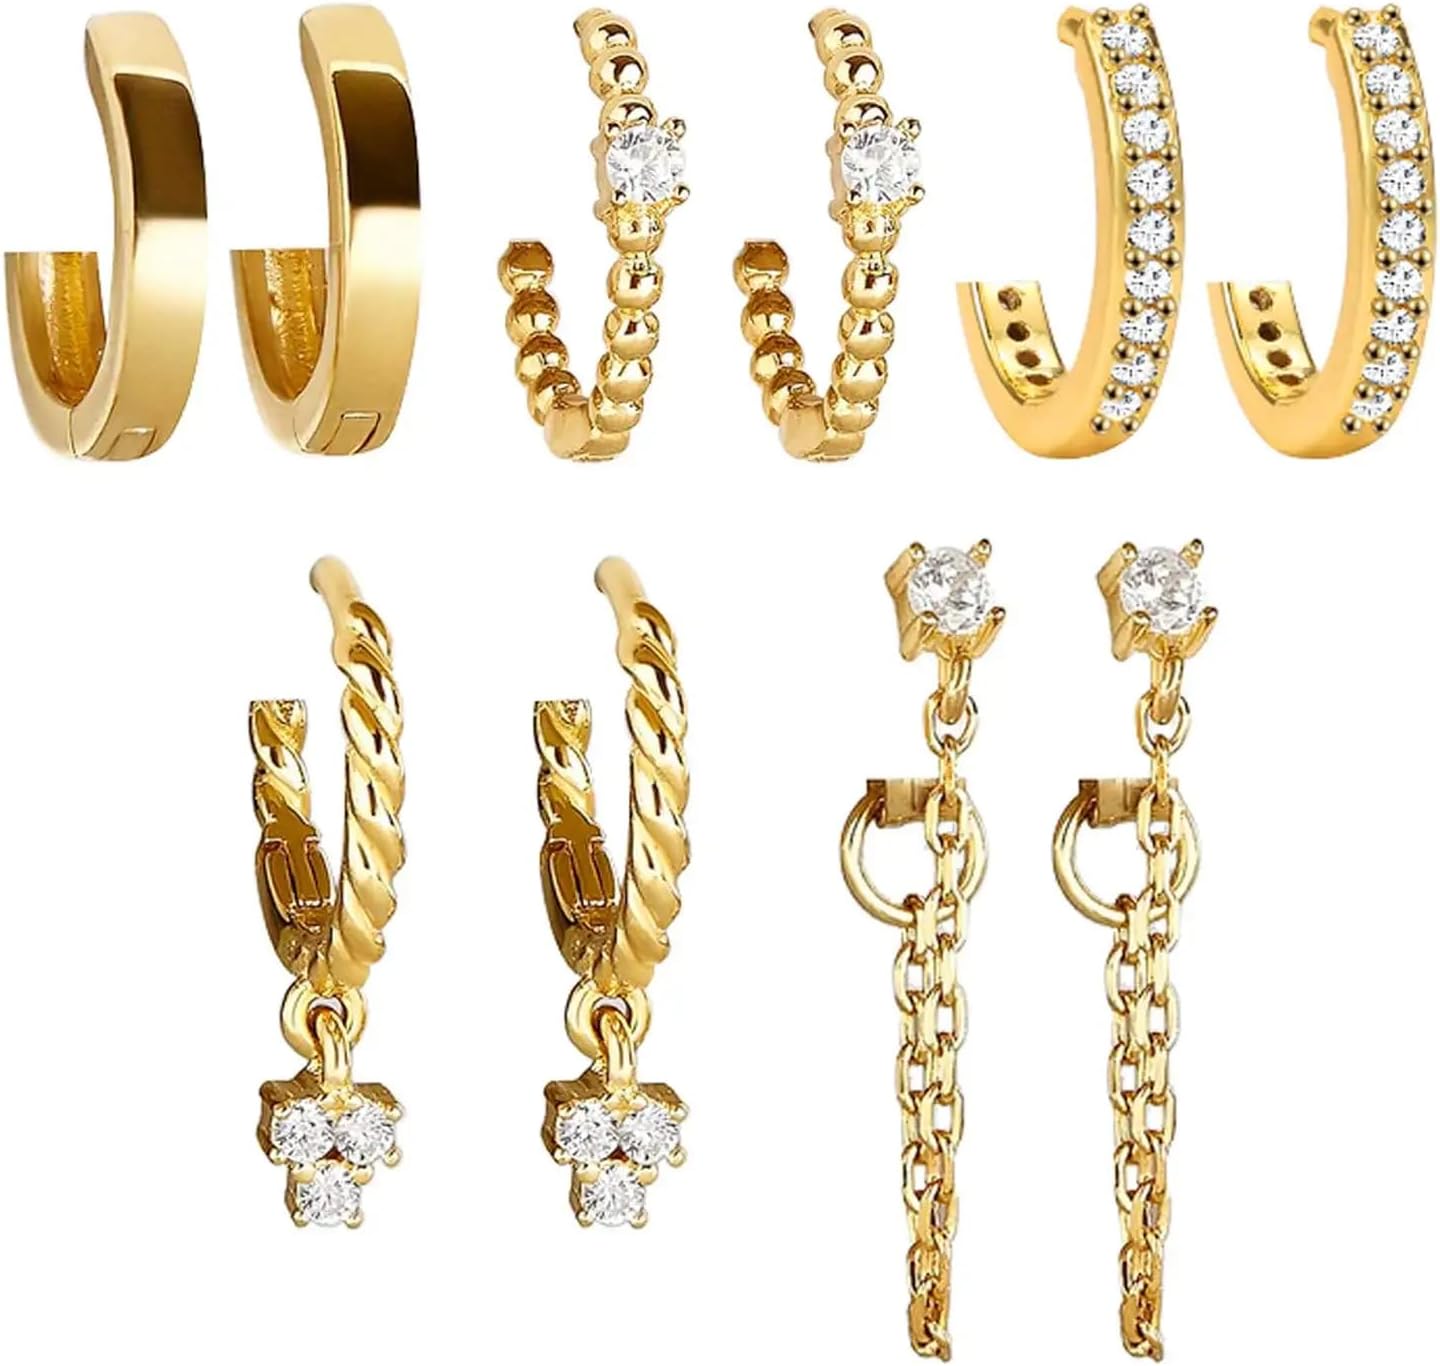 5 Pair Women's Gold Earrings Set, Women's Personalized Hoop Earrings Set